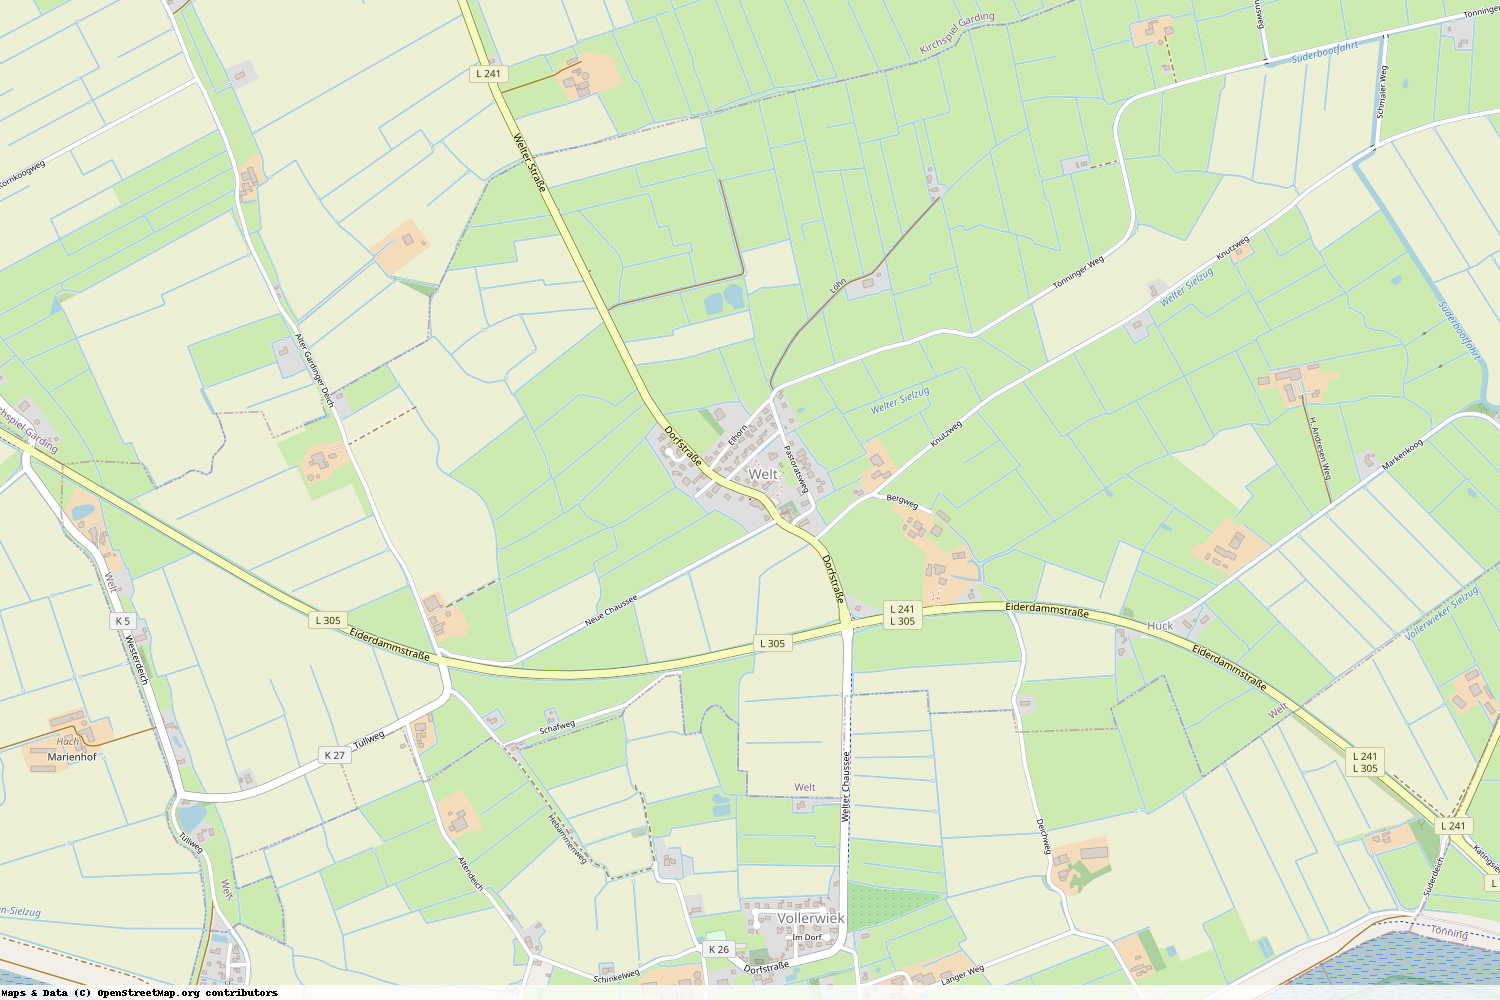 Ist gerade Stromausfall in Schleswig-Holstein - Nordfriesland - Welt?